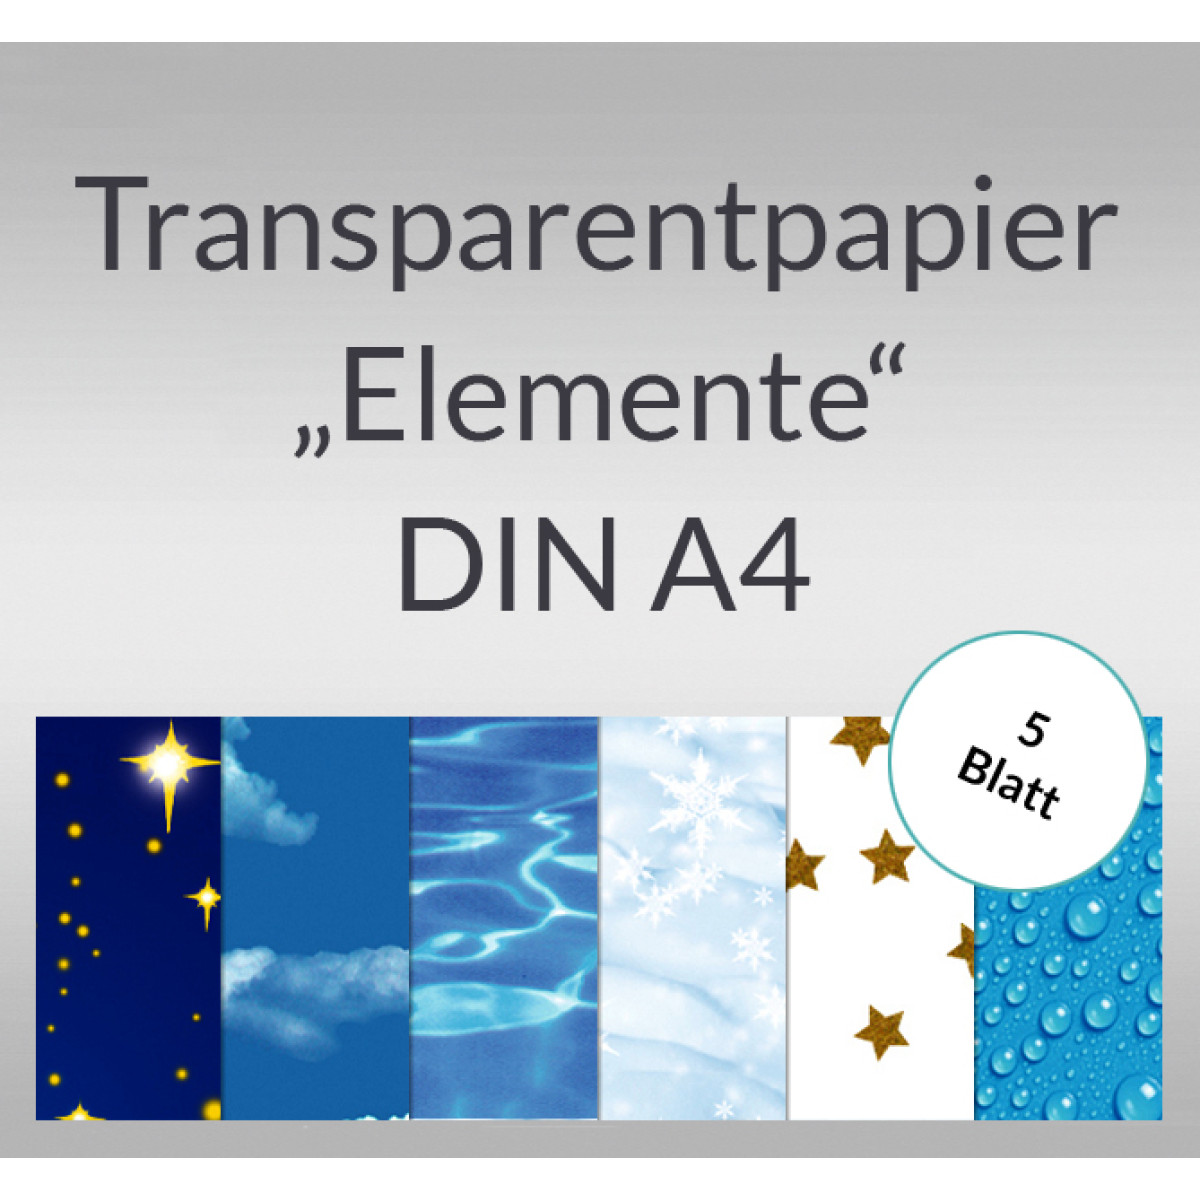 Transparentpapier "Elemente" DIN A4 - 5 Blatt